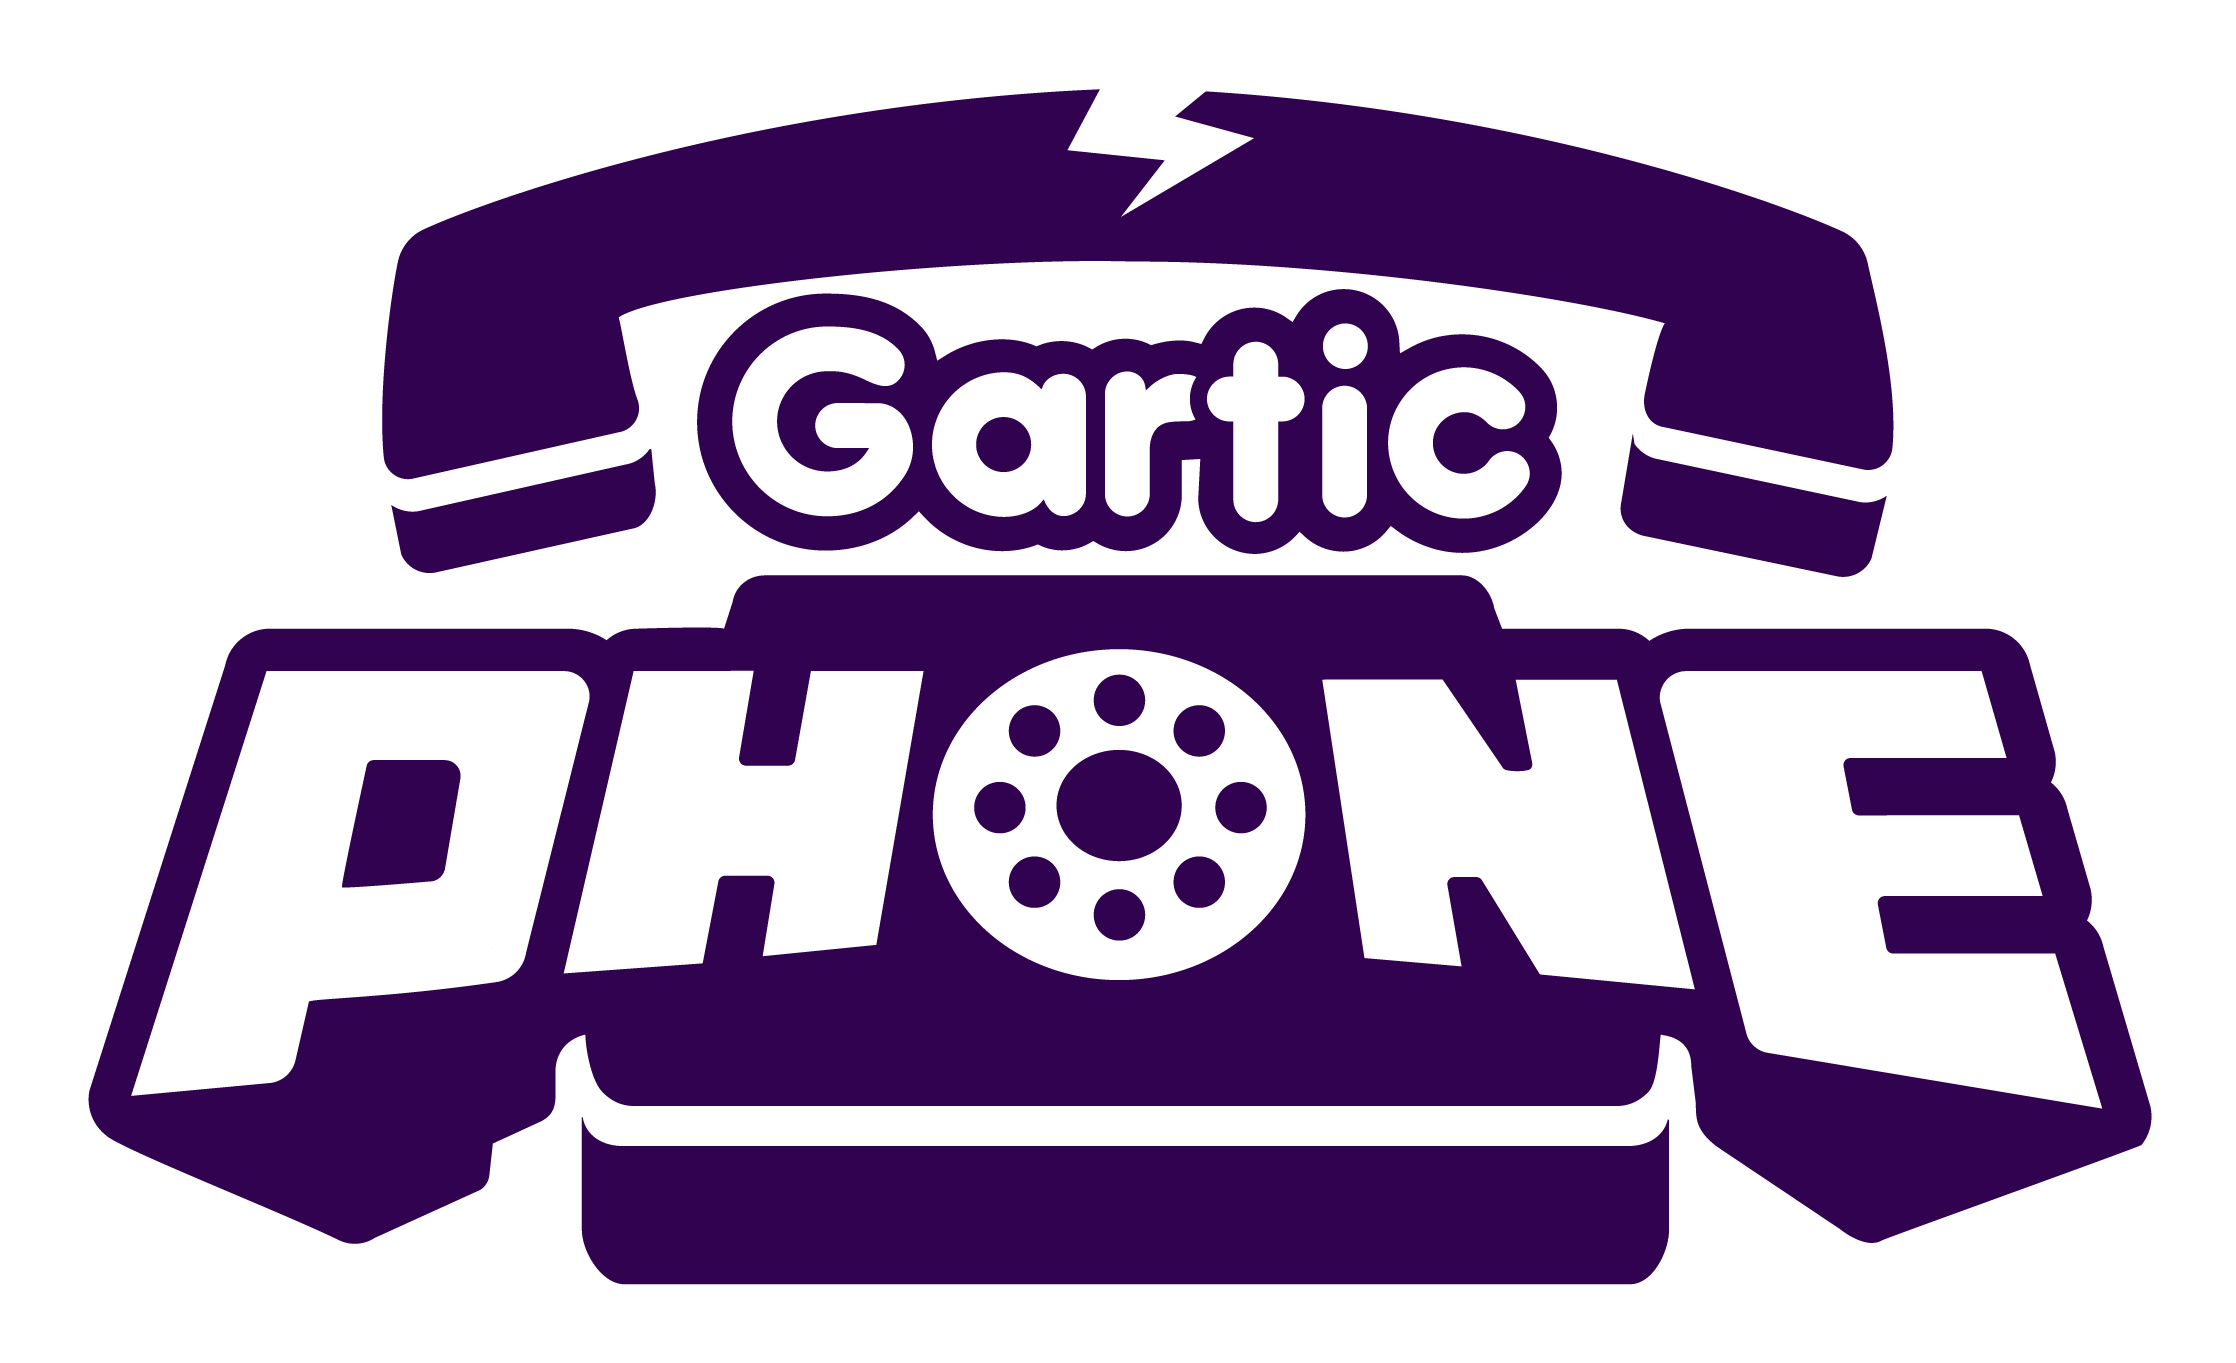 Gartic by Gartic